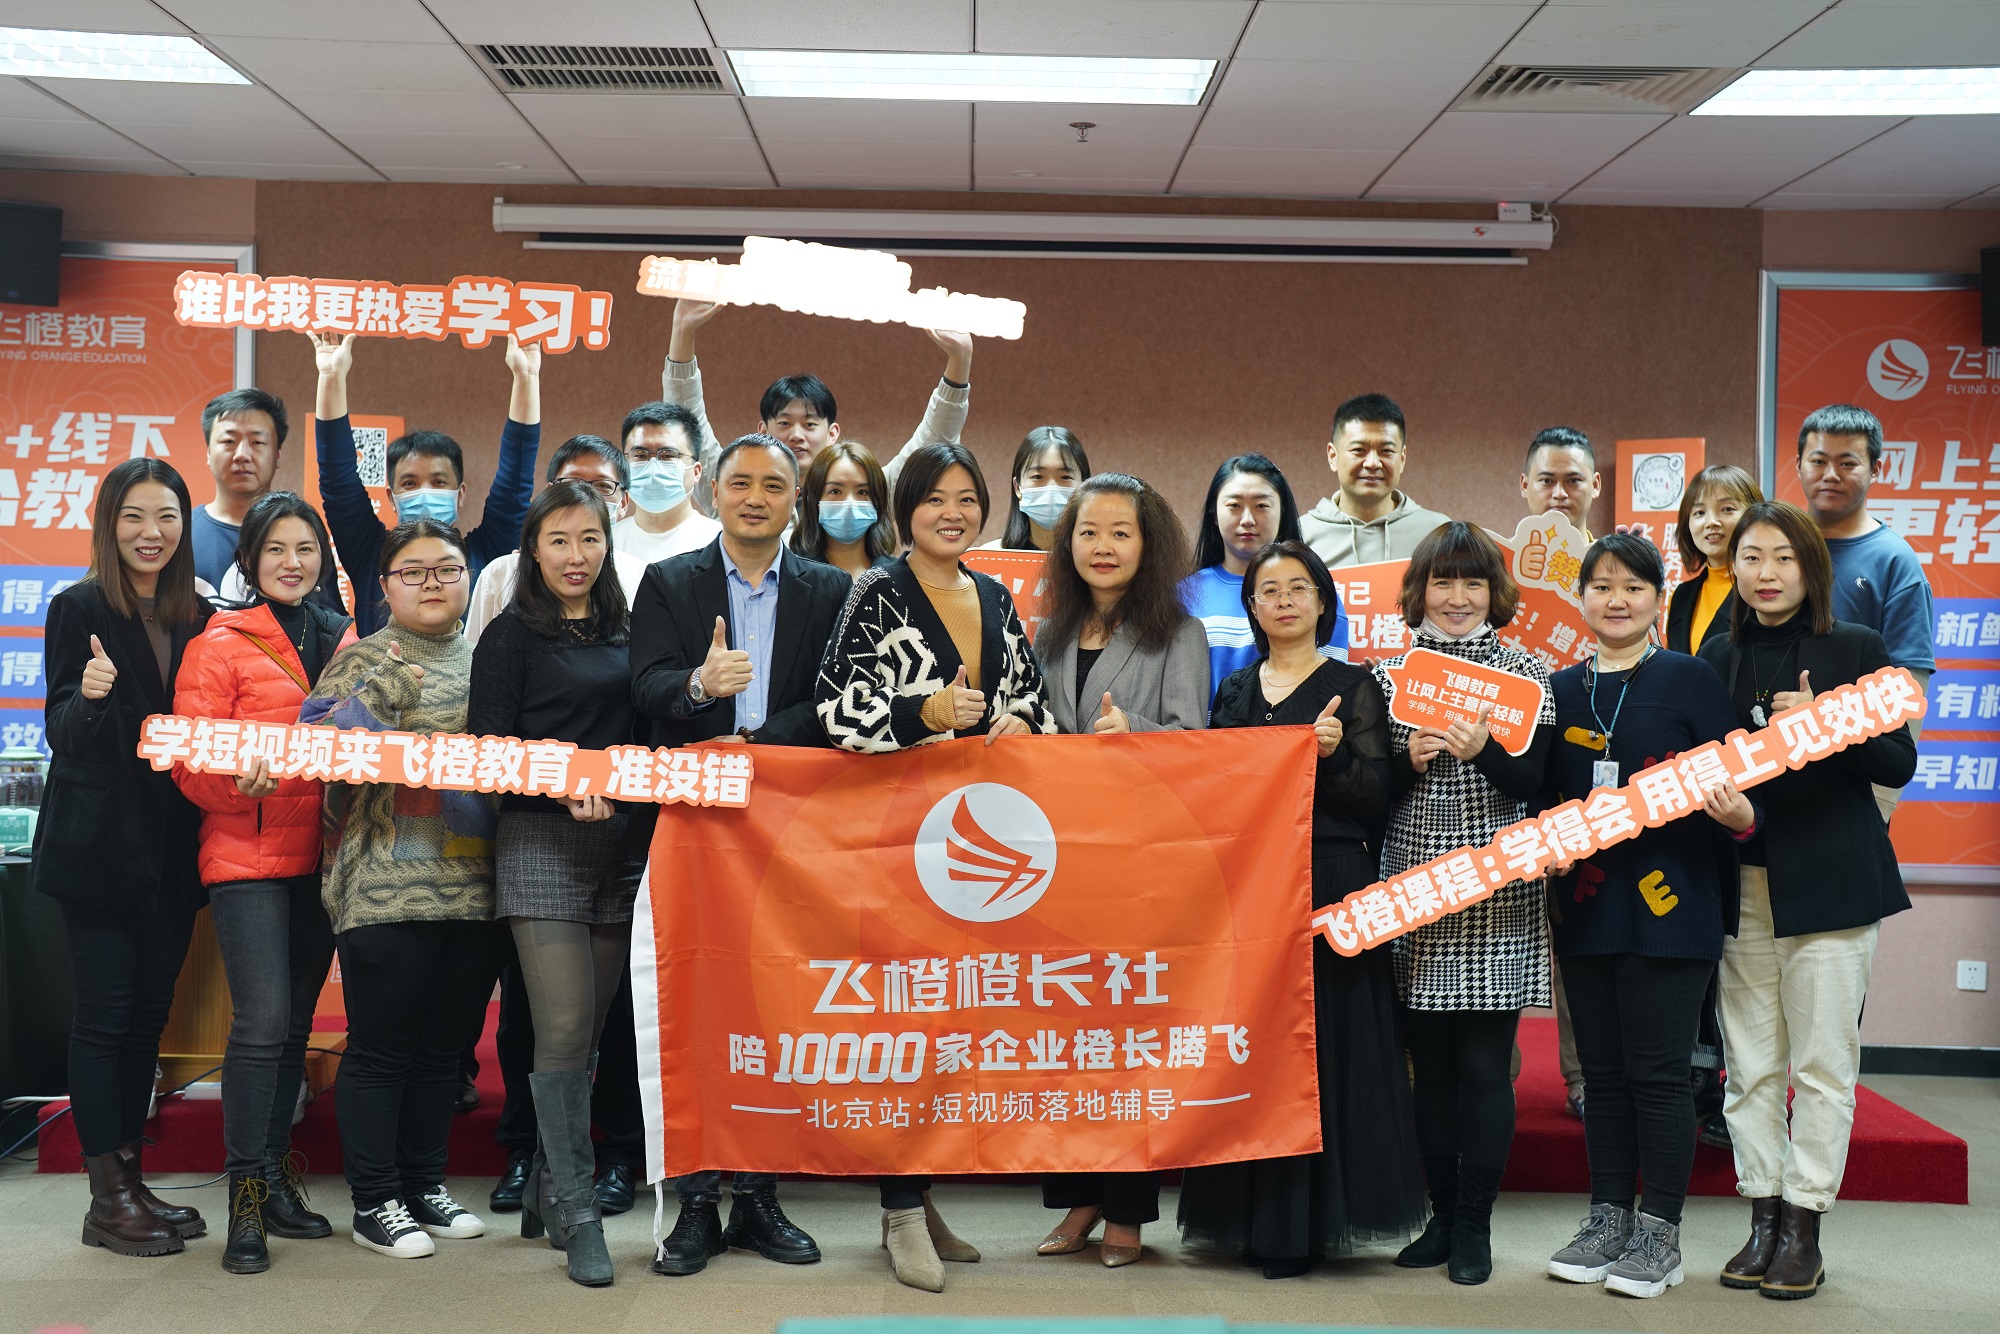 飞橙教育专业讲师团队在北京举办辅导沙龙，为企业抖音短视频营销答疑解惑